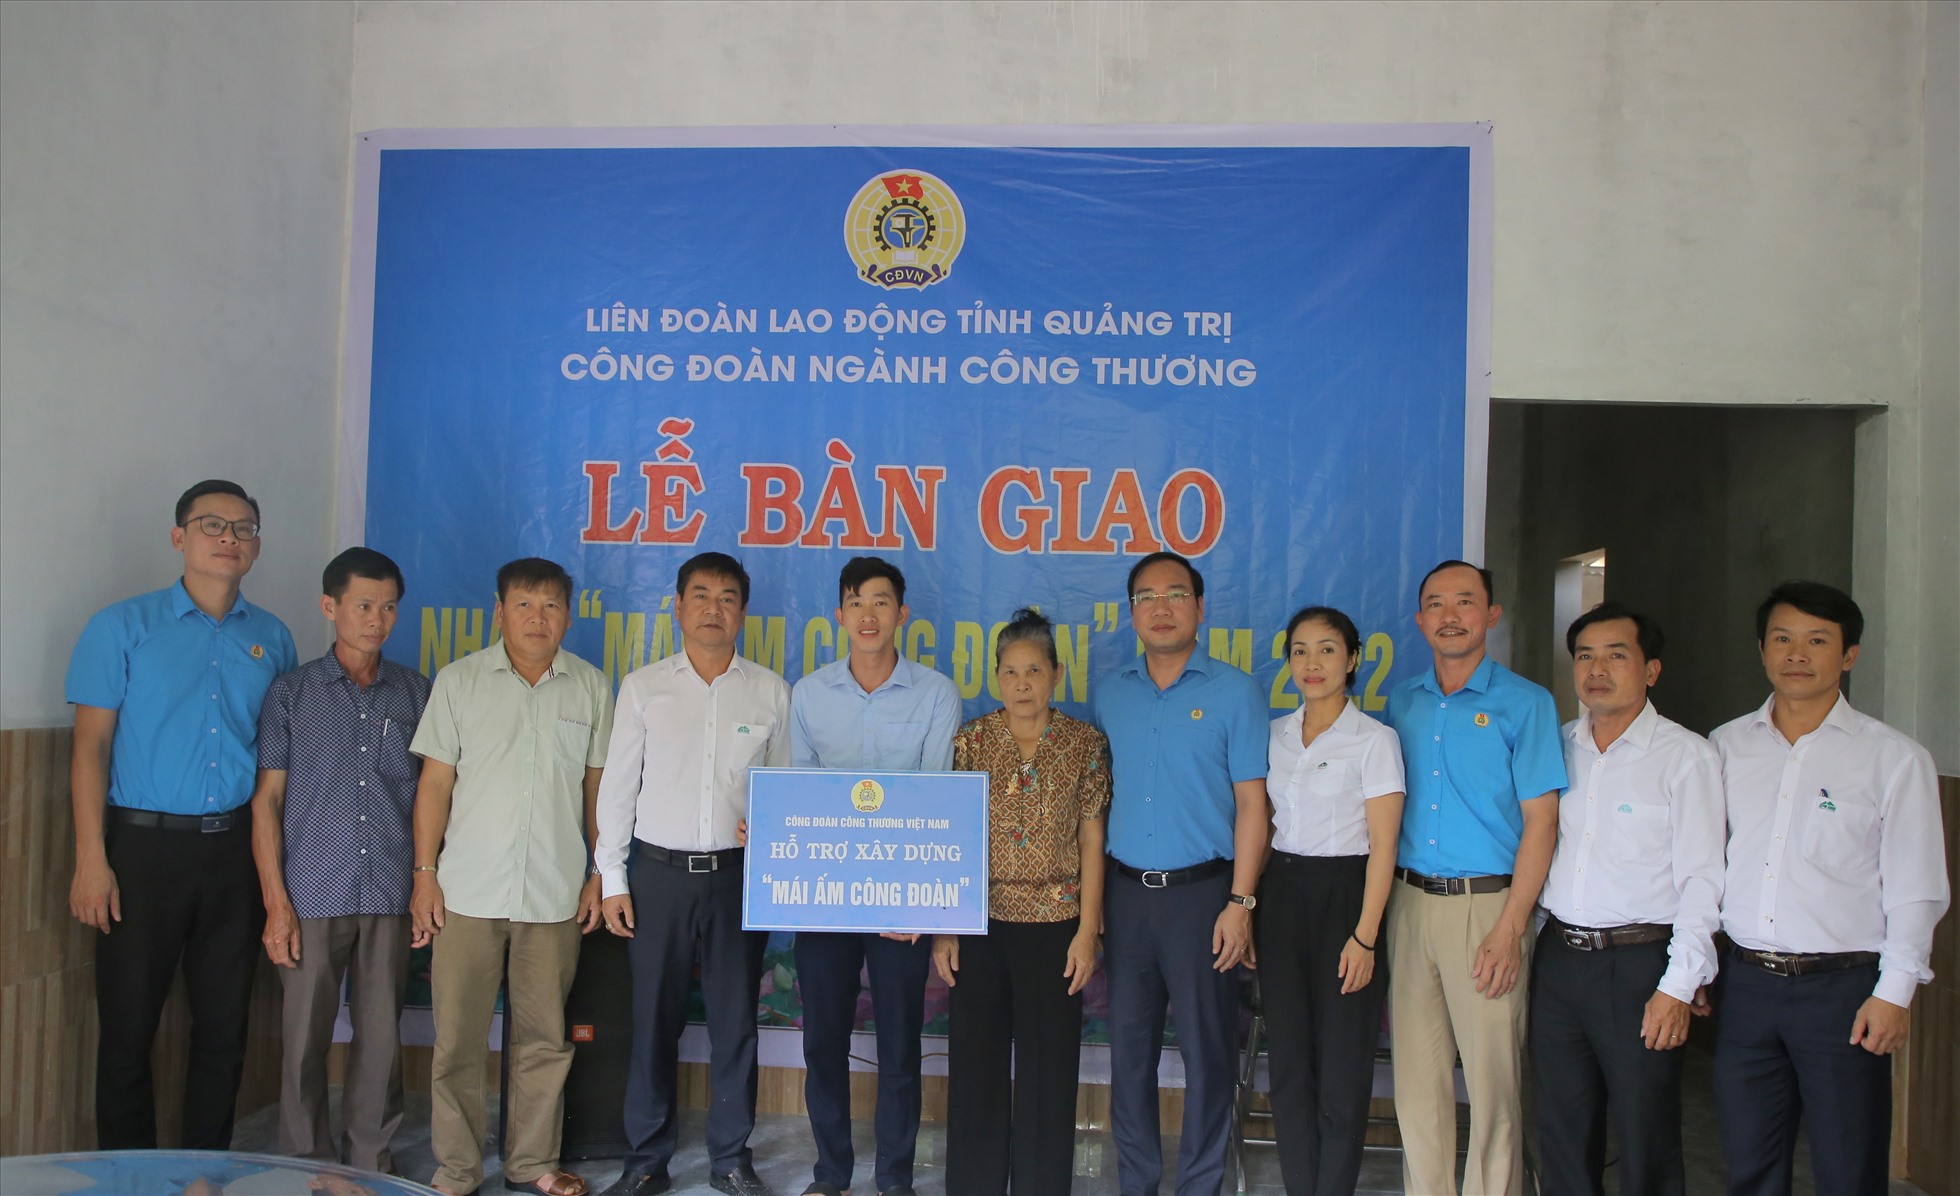 Gia đình anh Hồ Non đón nhận tình cảm từ phía công ty, công đoàn ngành và Công đoàn Công thương Việt Nam. Ảnh: Hưng Thơ.